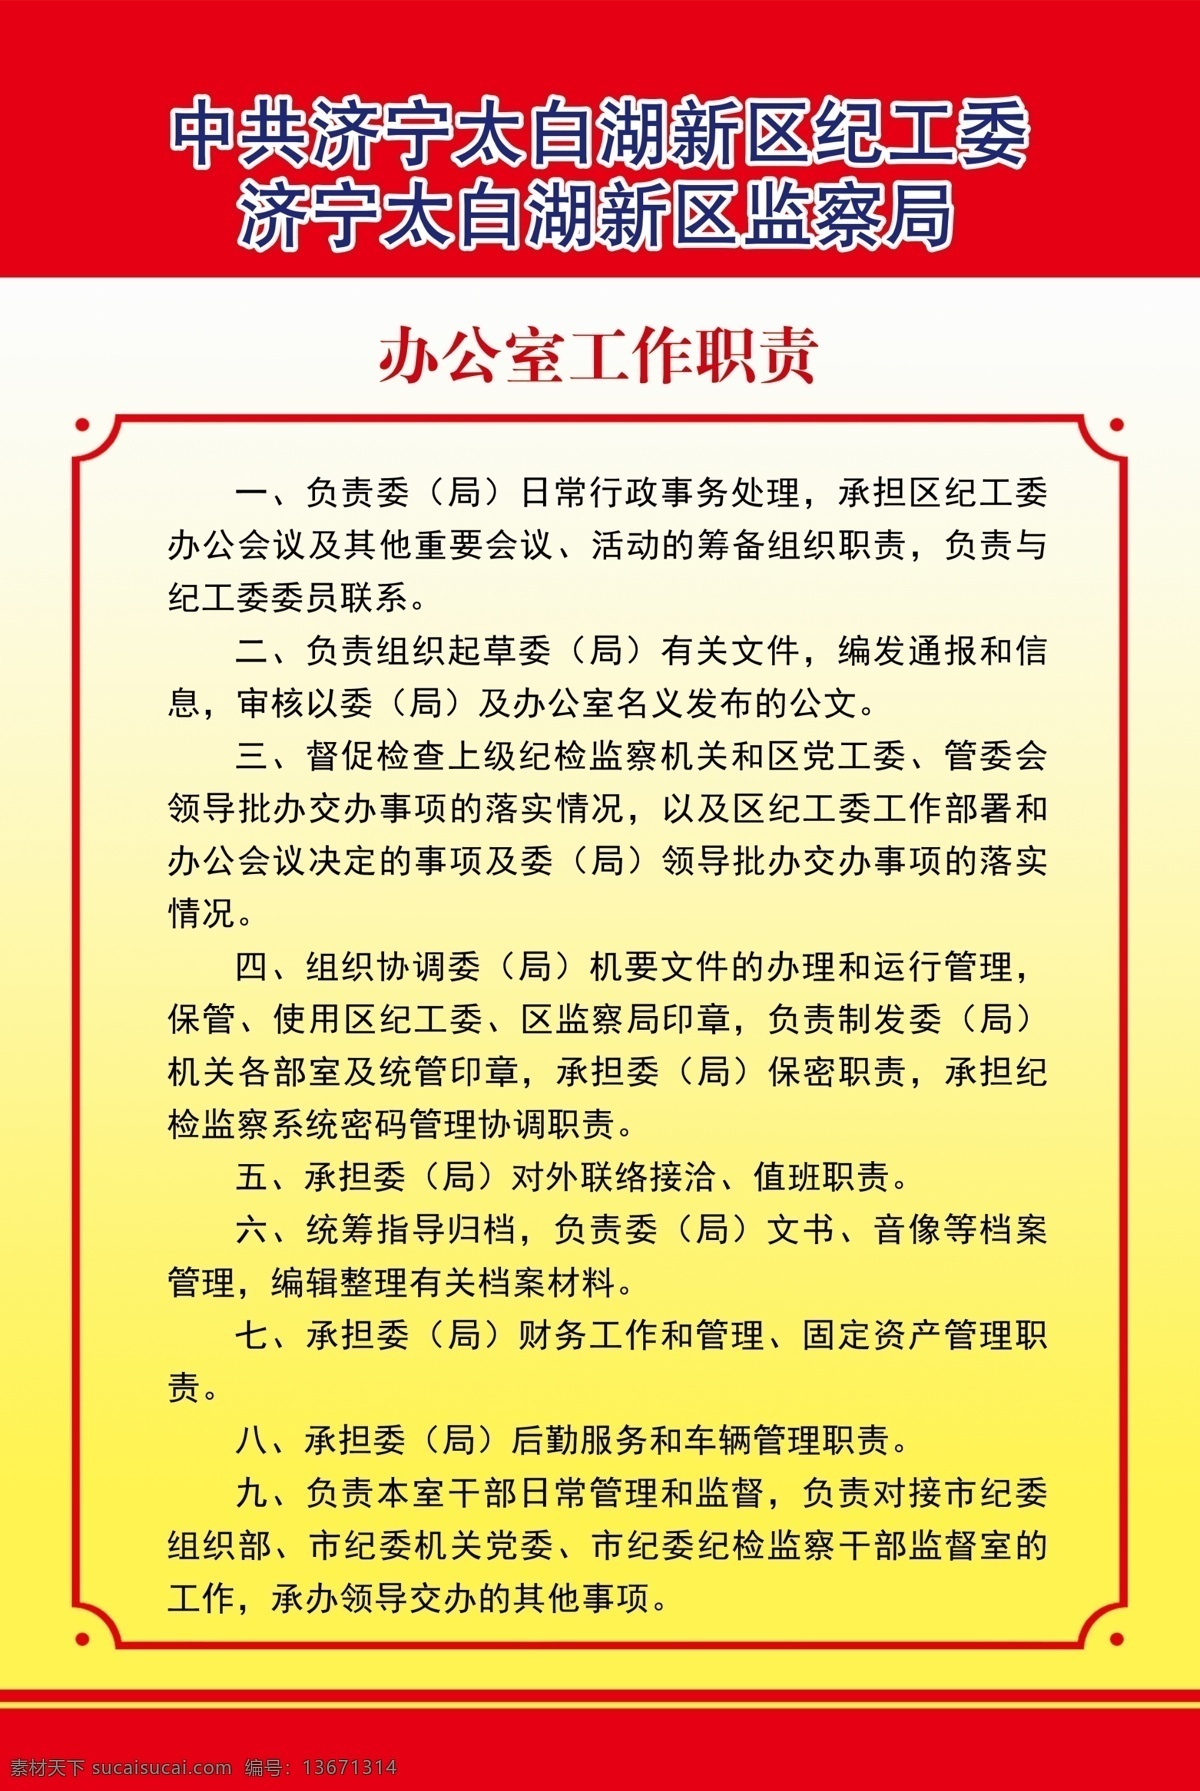 政府展板 制度 中华文化 华表 天安门 机关单位 政府宣传 政策宣传 政策导读 展板模板